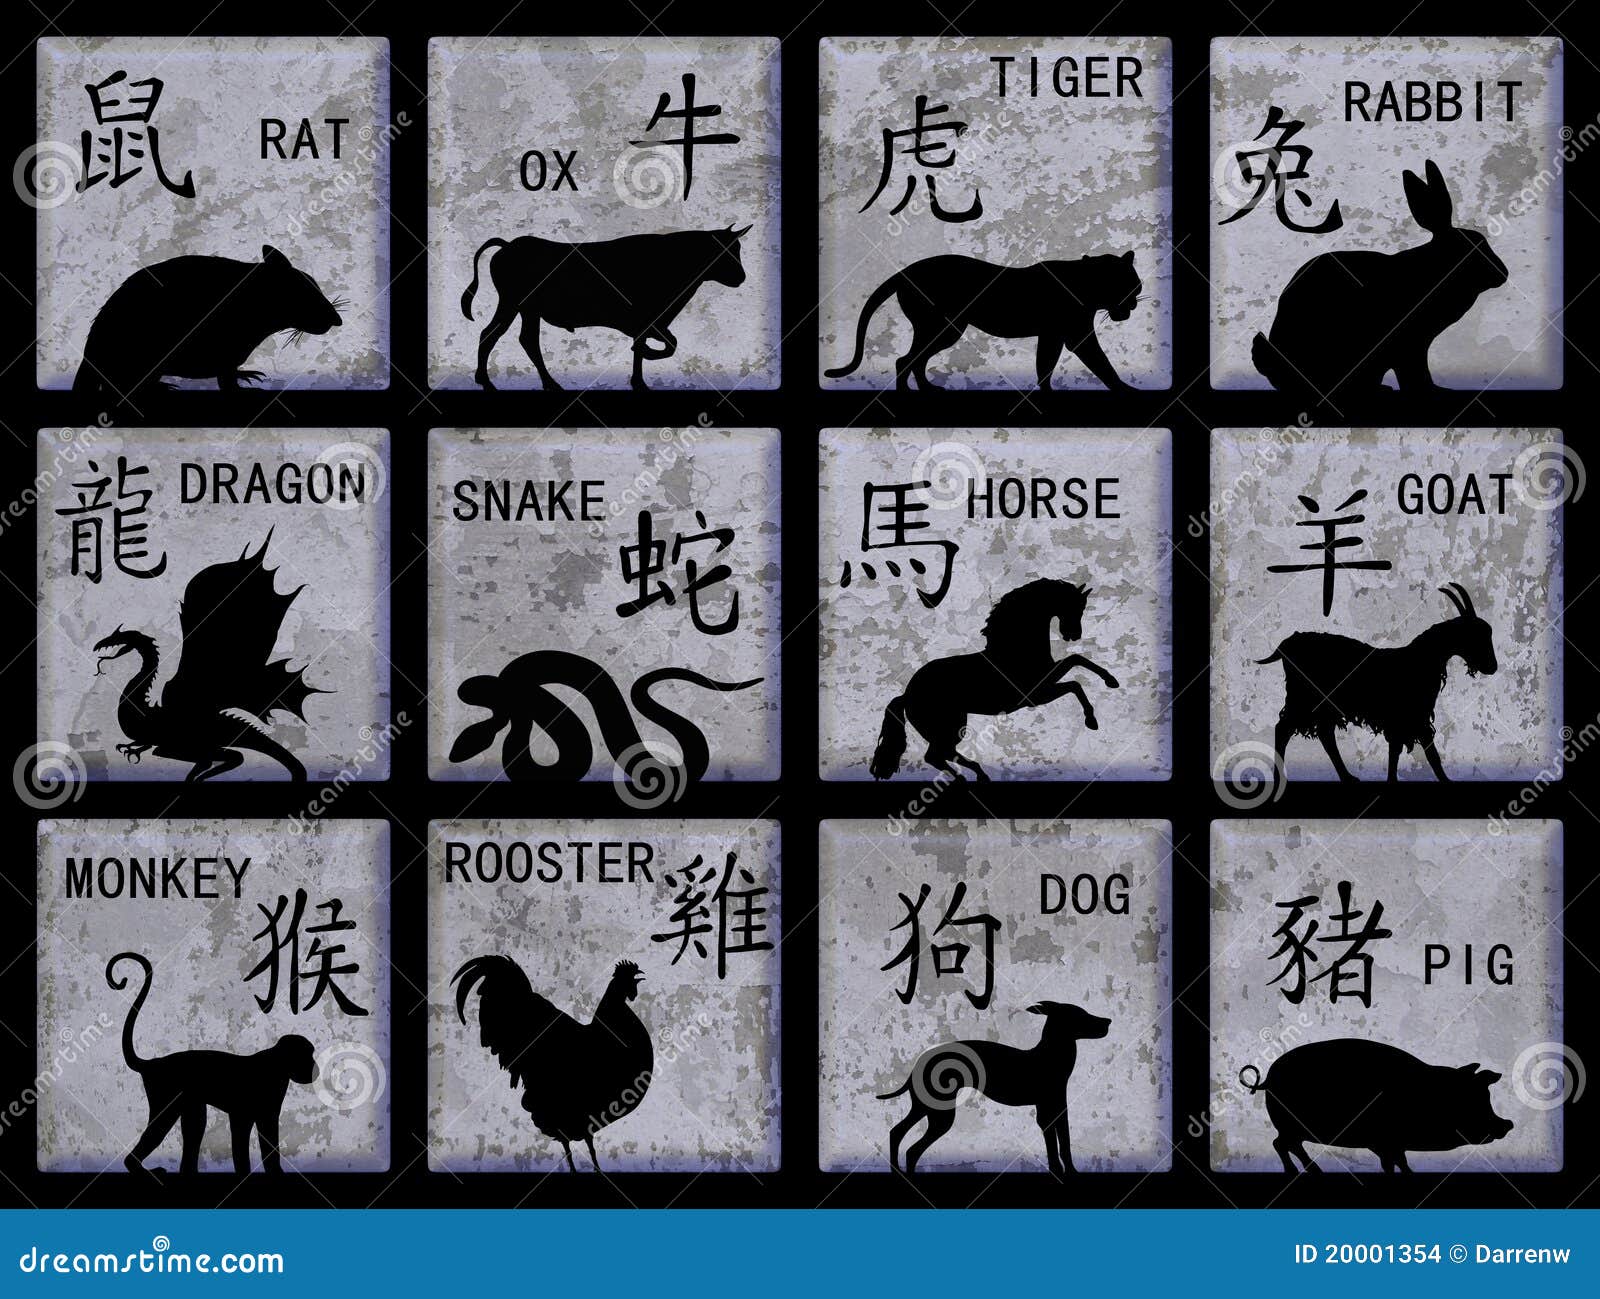 Знаки зодиака на китайском. Символы китайского гороскопа. Китайские знаки знаки зодиака. Китайские символы животных. Китайский гороскоп иероглифы.